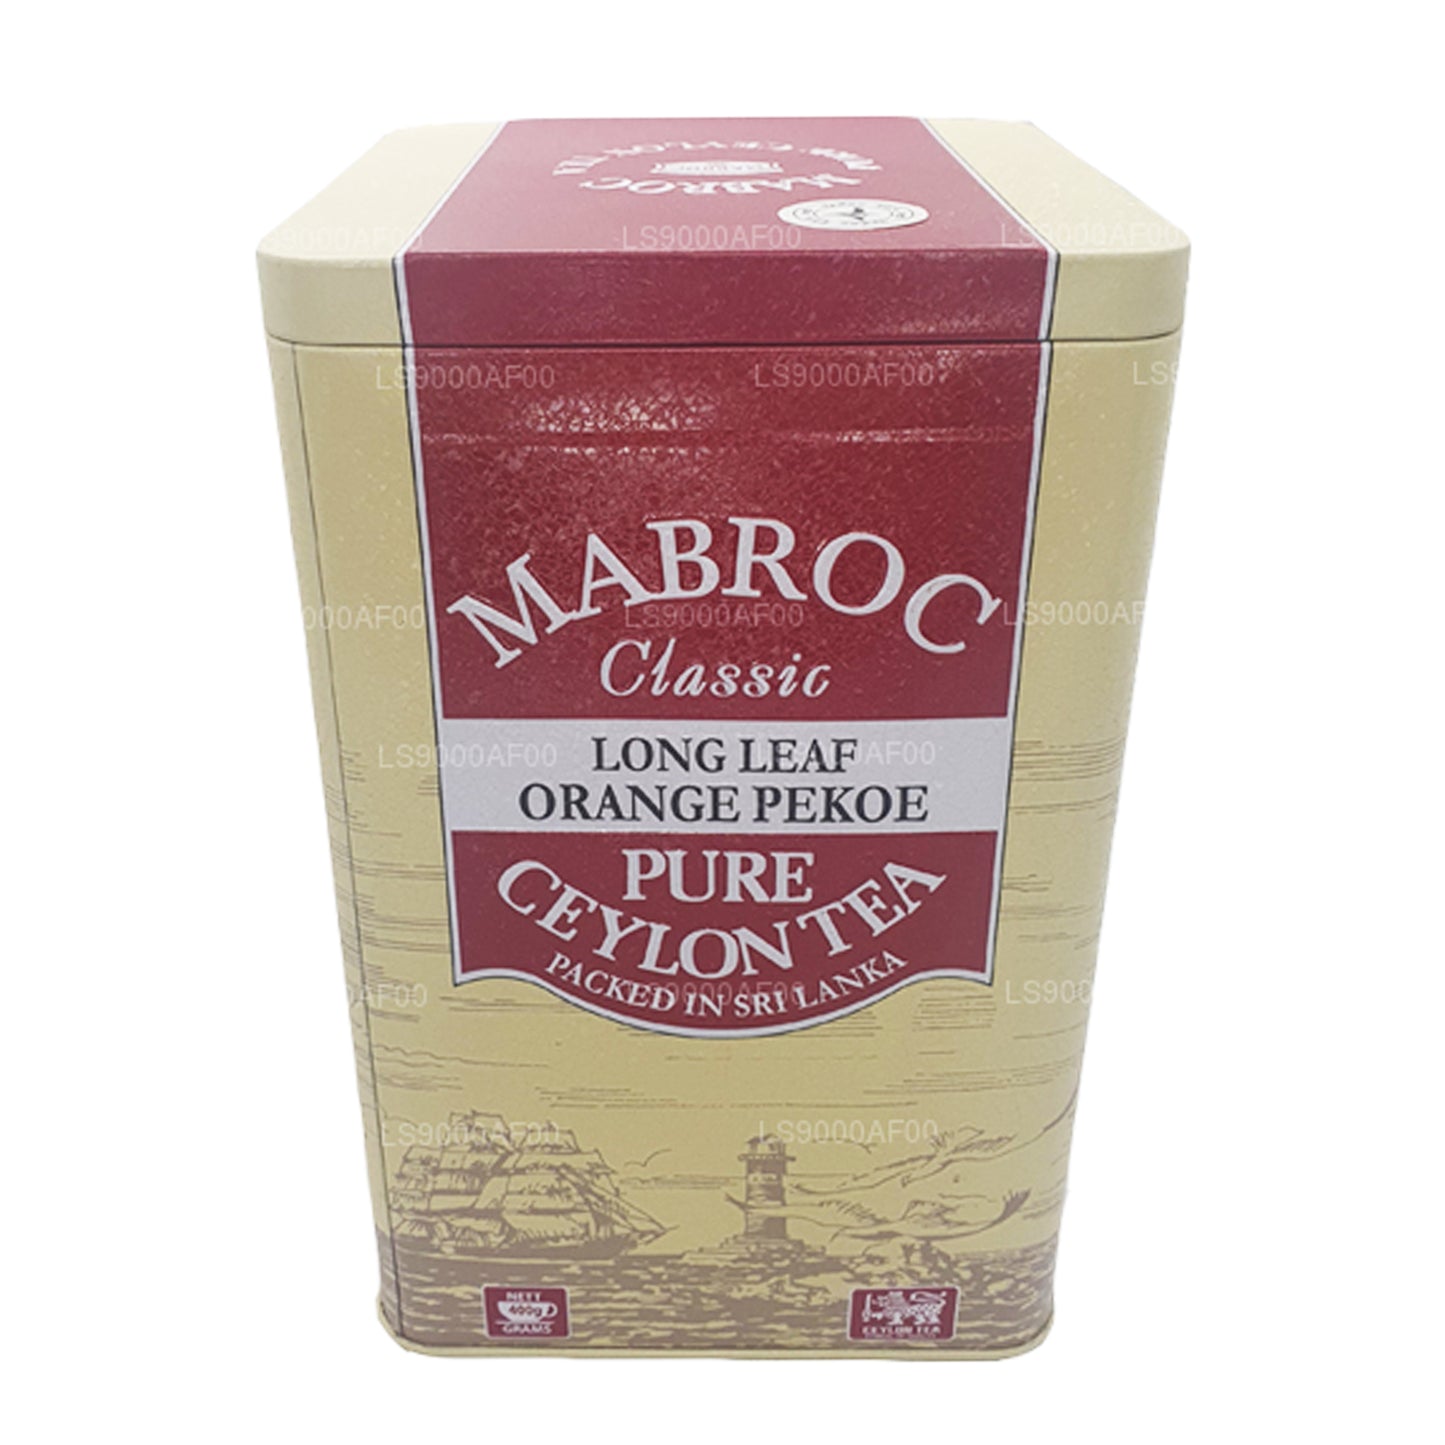 Mabroc Klasik Uzun Yapraklı Portakal Peoke Çayı (400g)